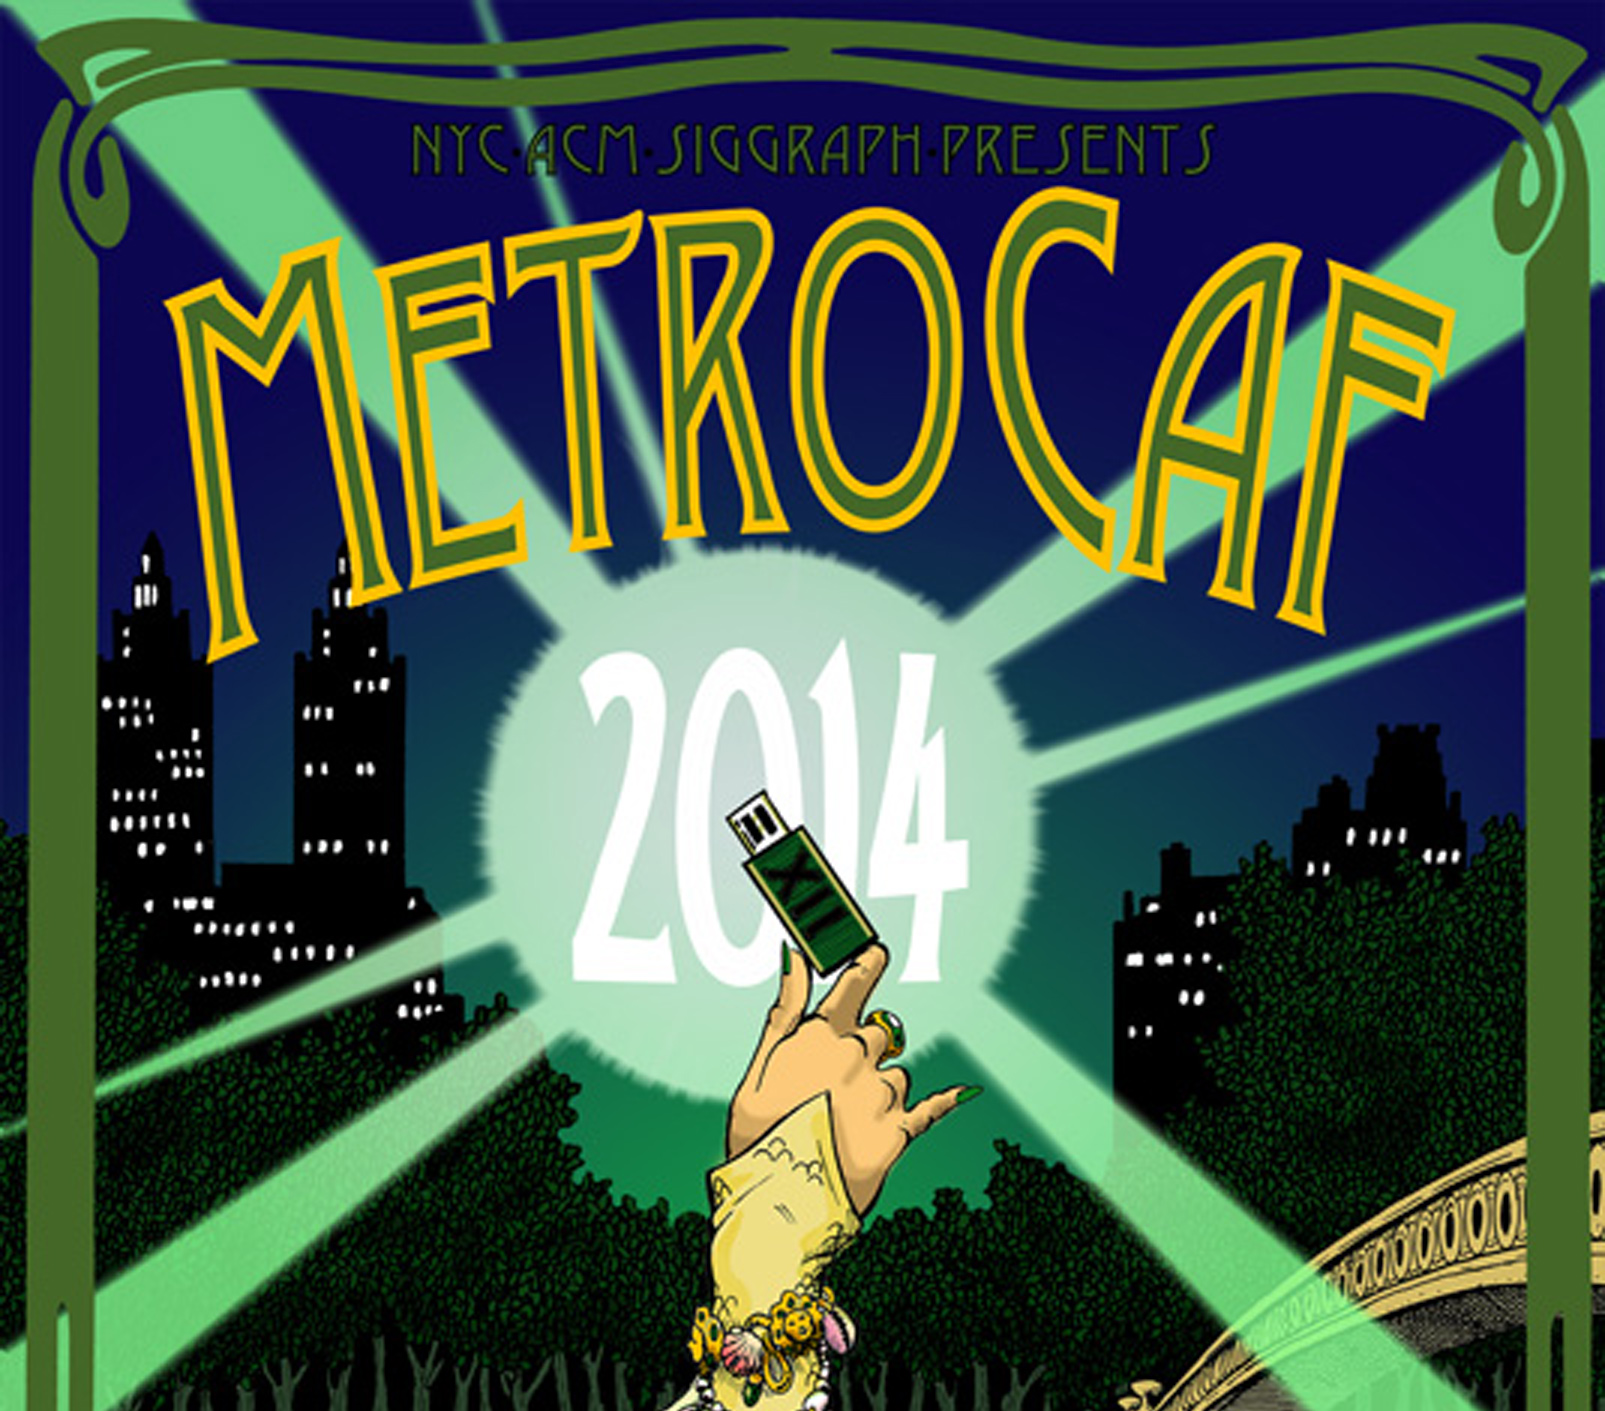 MetroCAF 2014